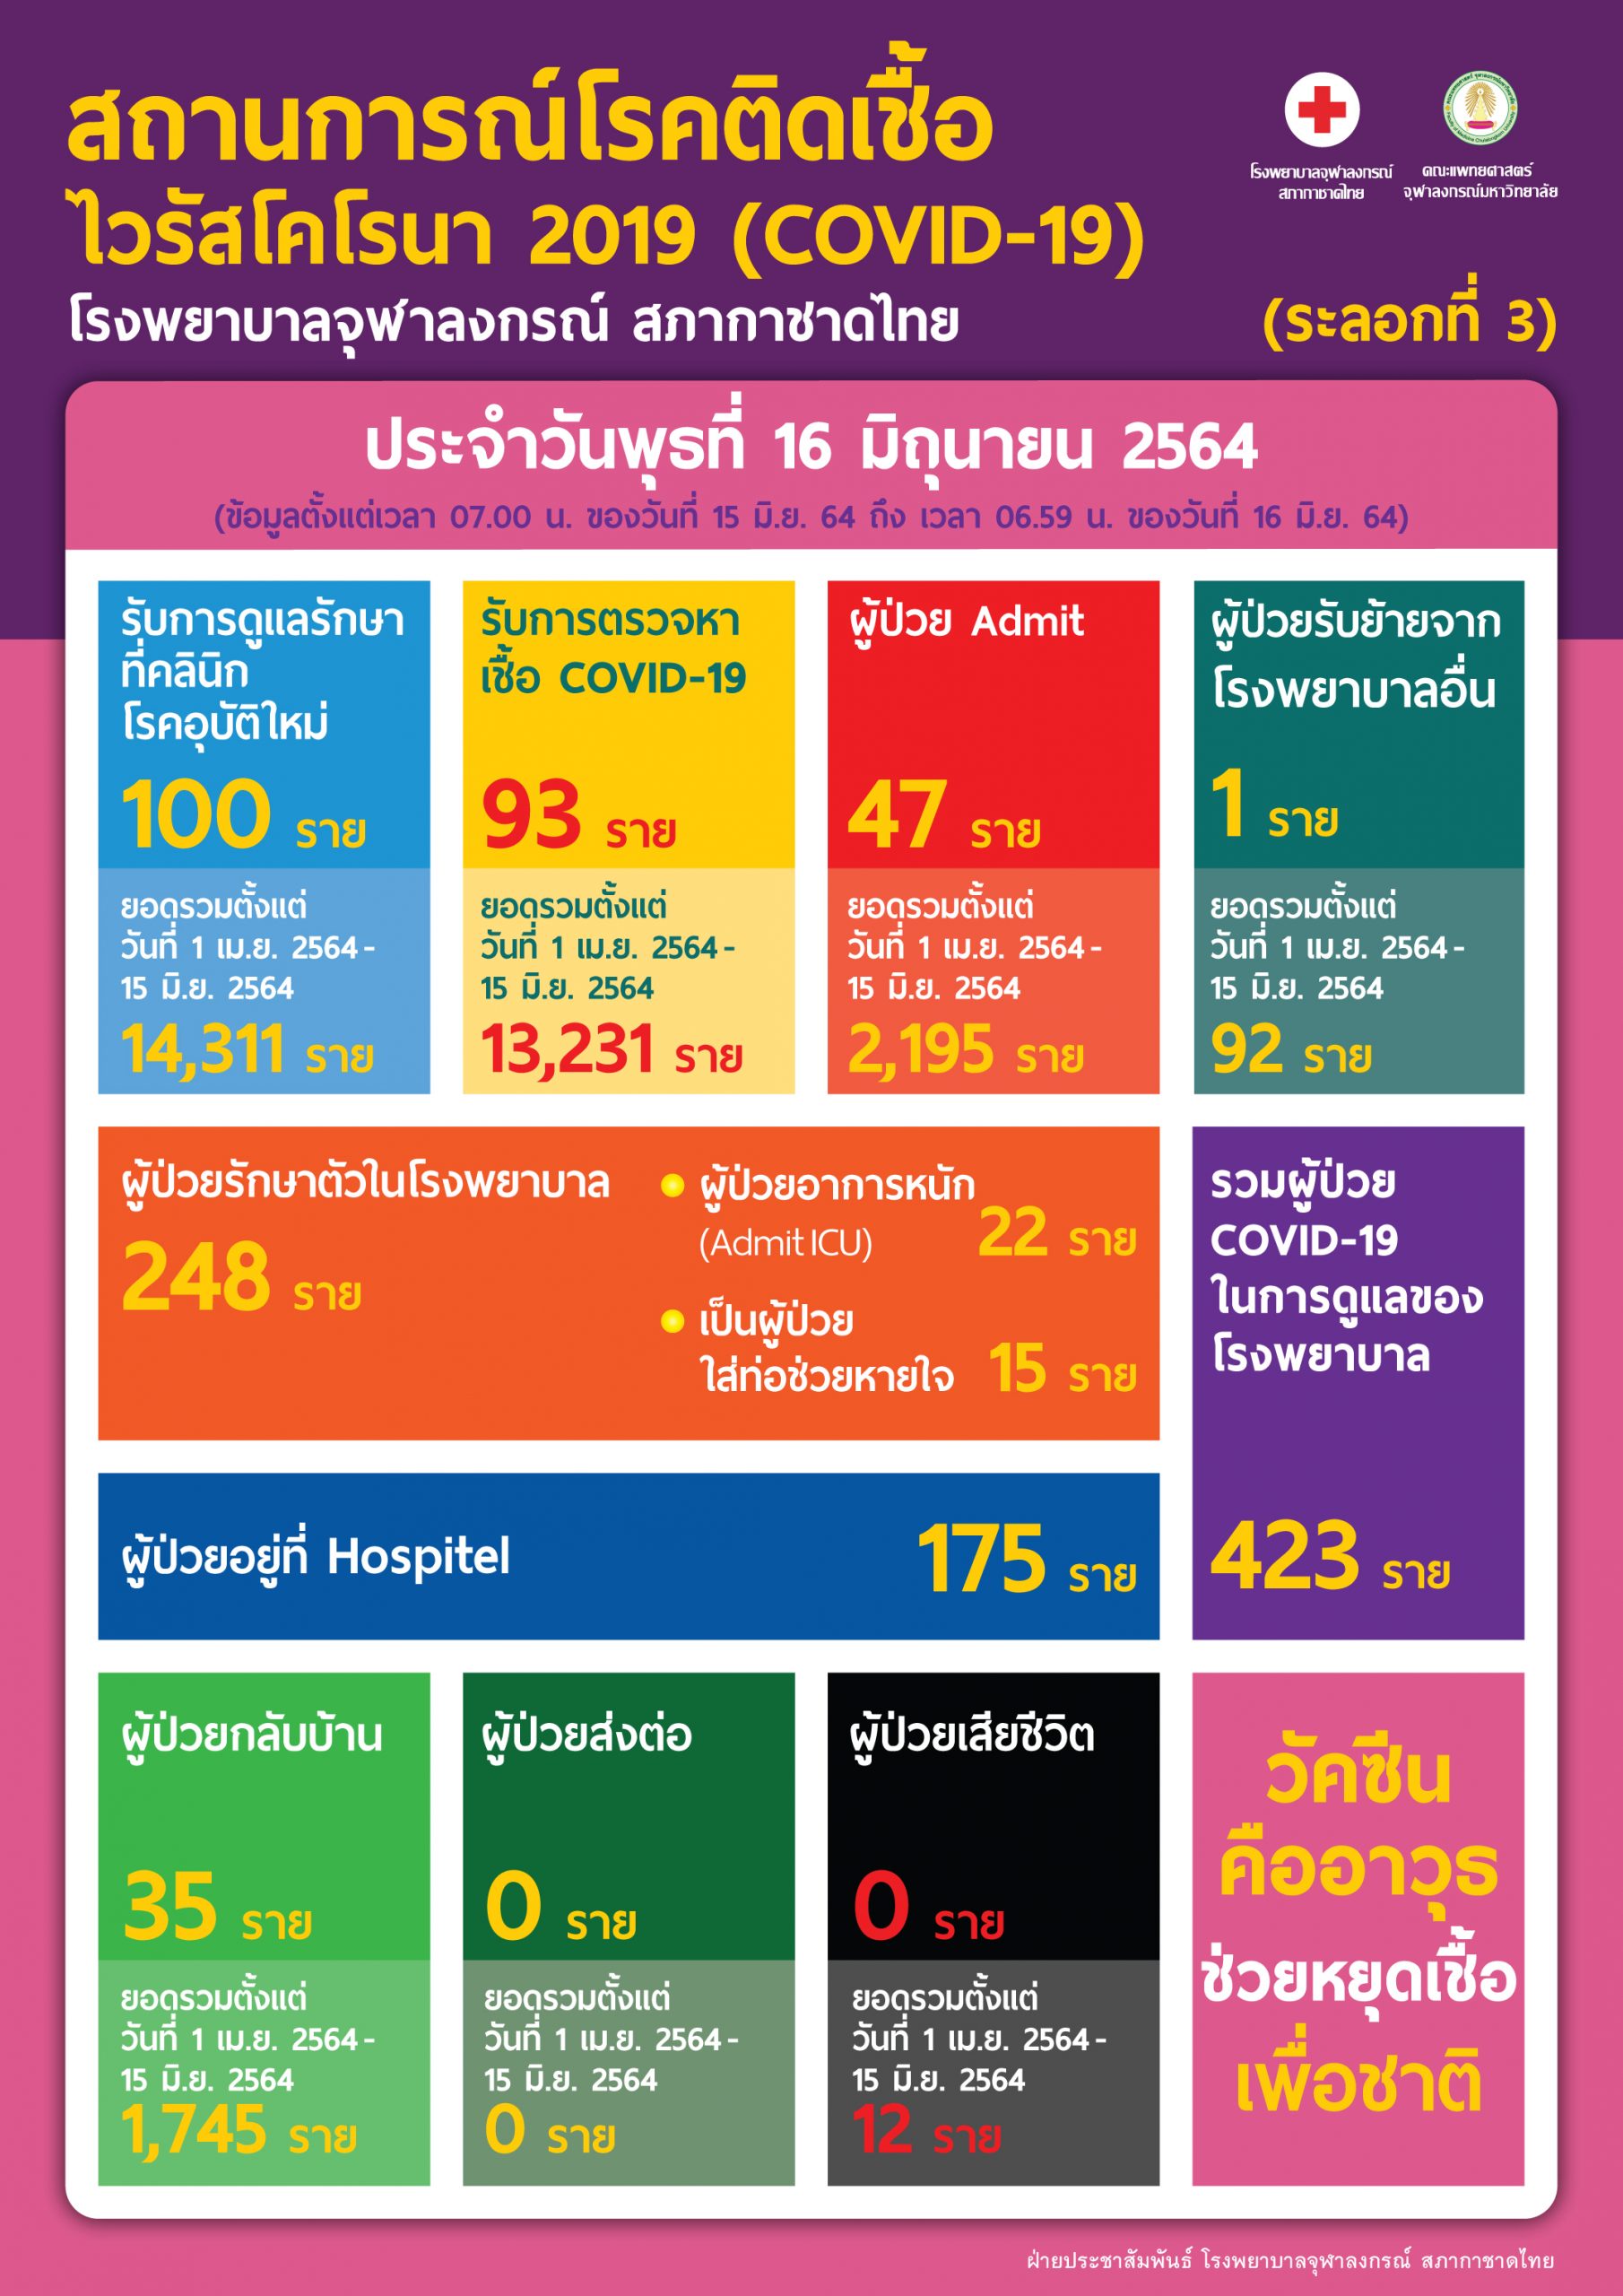 สถานการณ์โรคติดเชื้อไวรัสโคโรนา 2019 (COVID-19)  (ระลอกที่ 3) โรงพยาบาลจุฬลงกรณ์ สภากาชาดไทย ประจำวันพุธที่ 16 มิถุนายน 2564